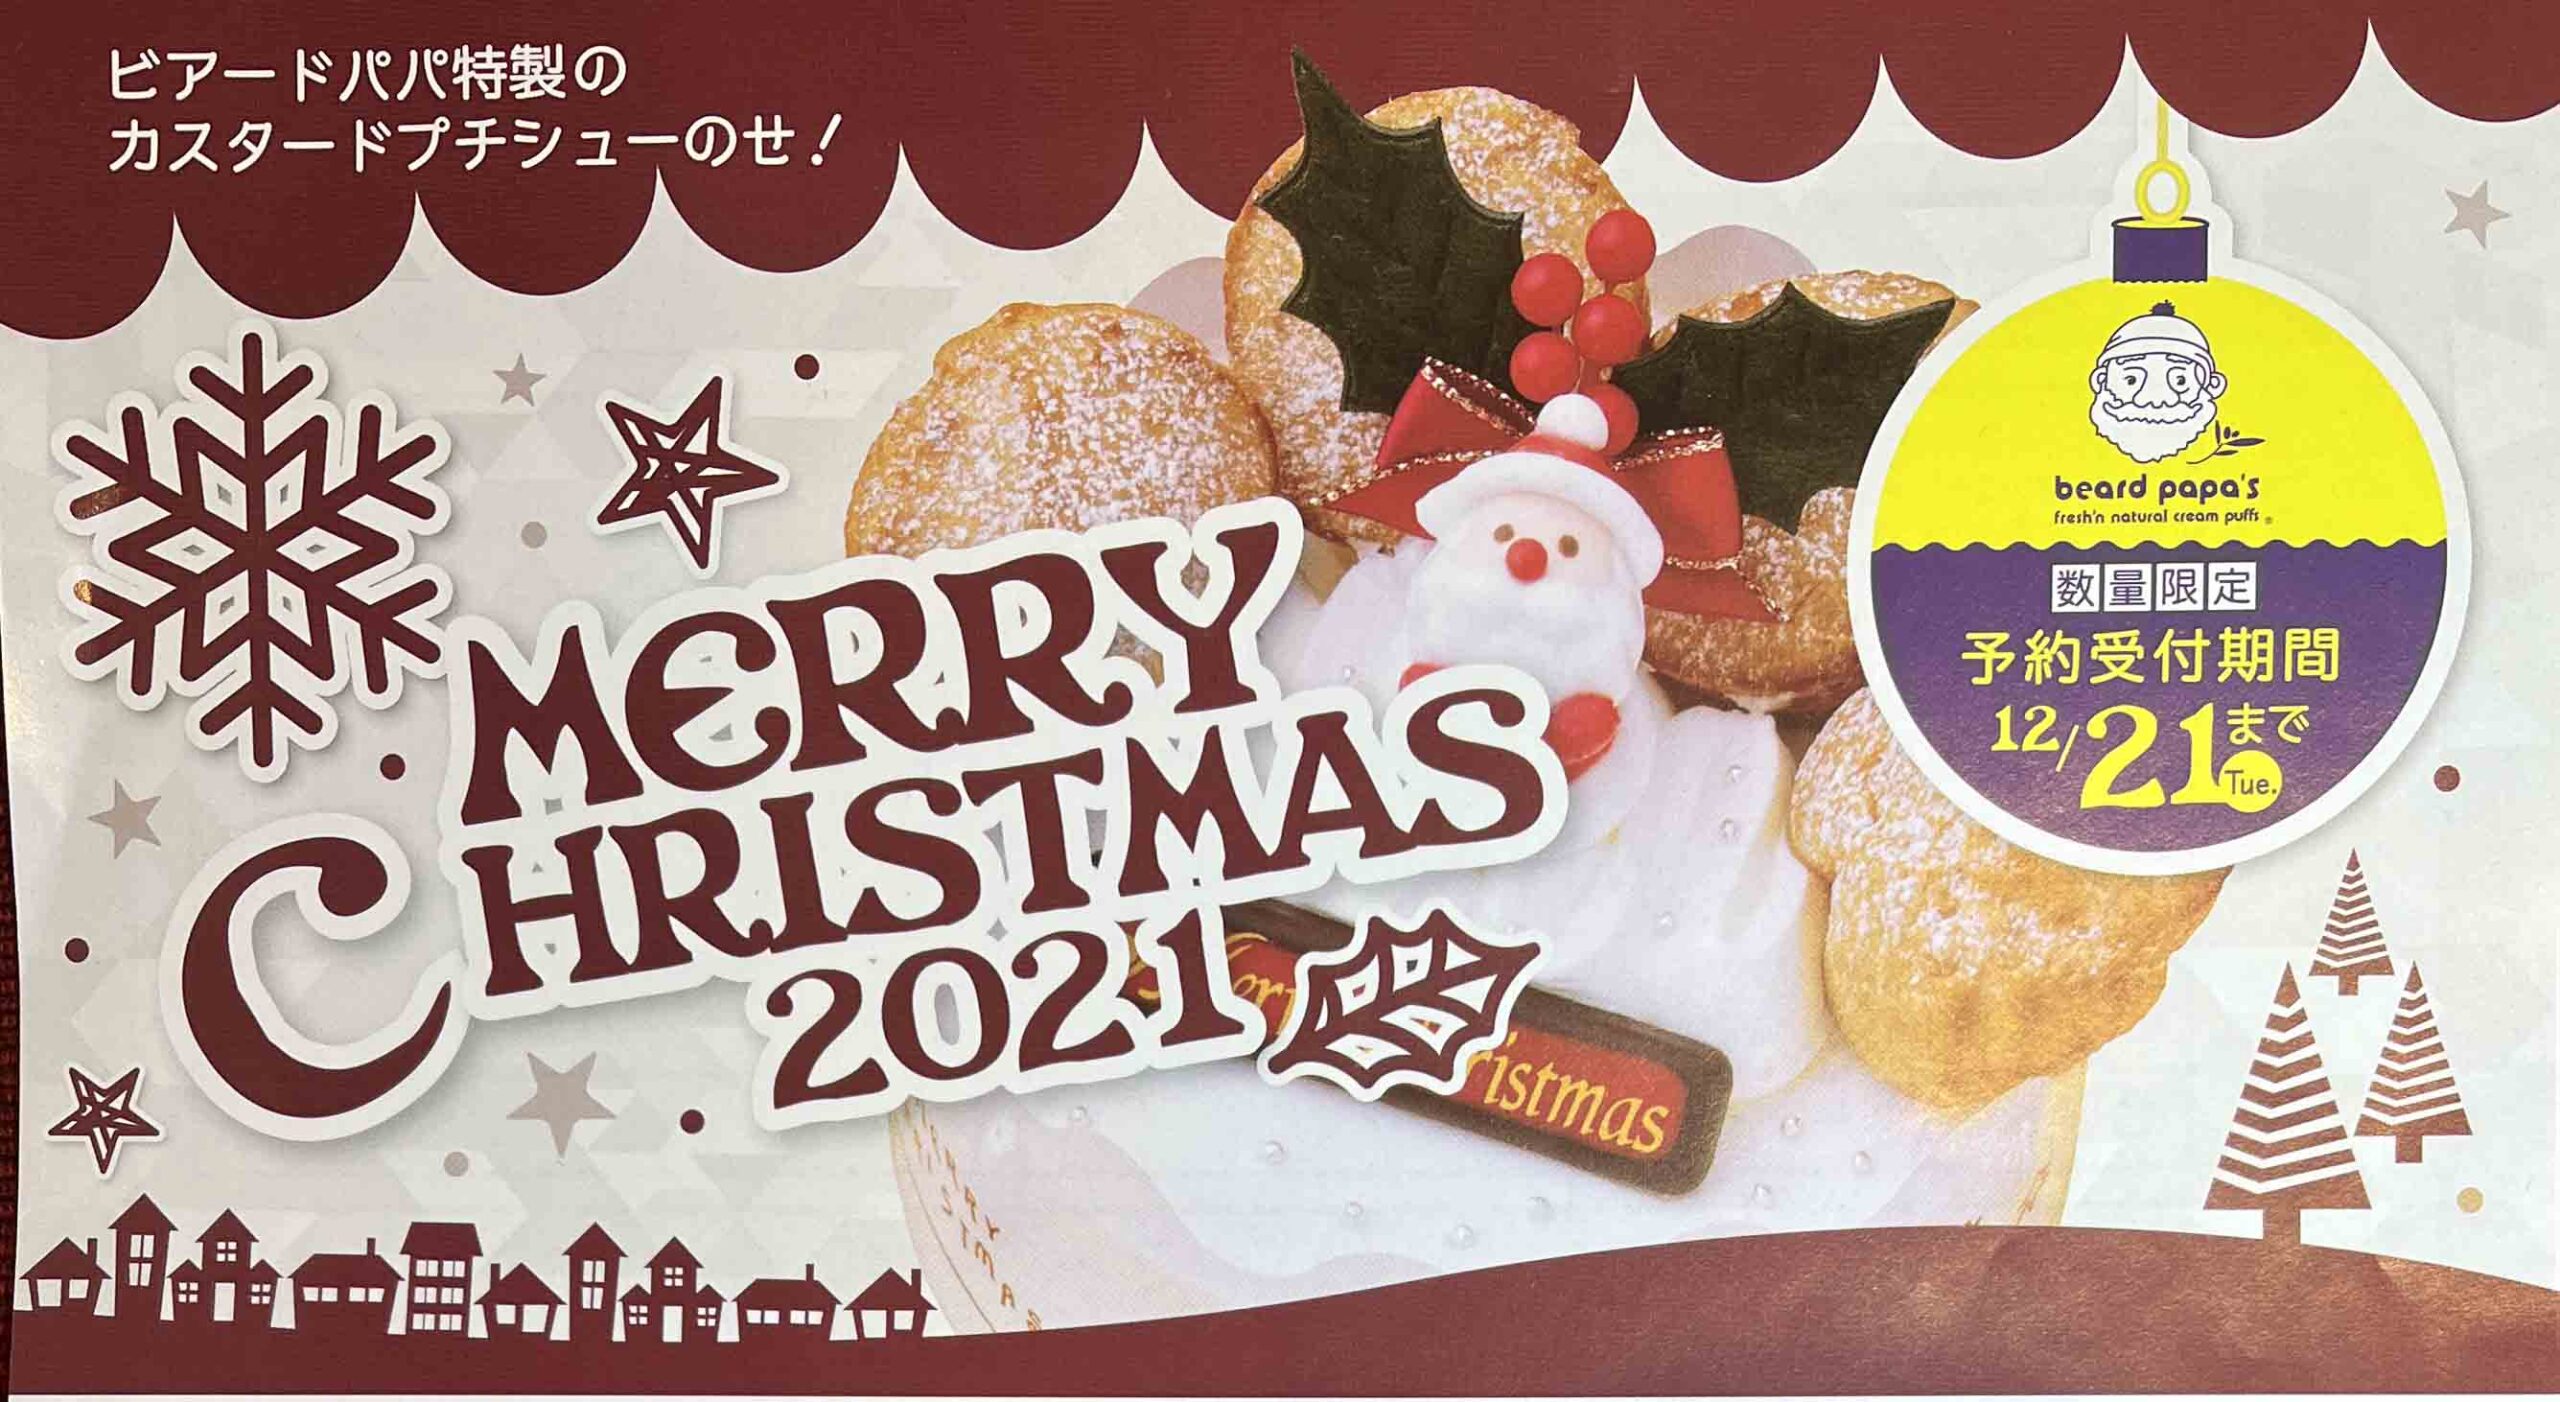 ビアードパパのクリスマスケーキ21予約は 美味しい 口コミは 主婦めせん